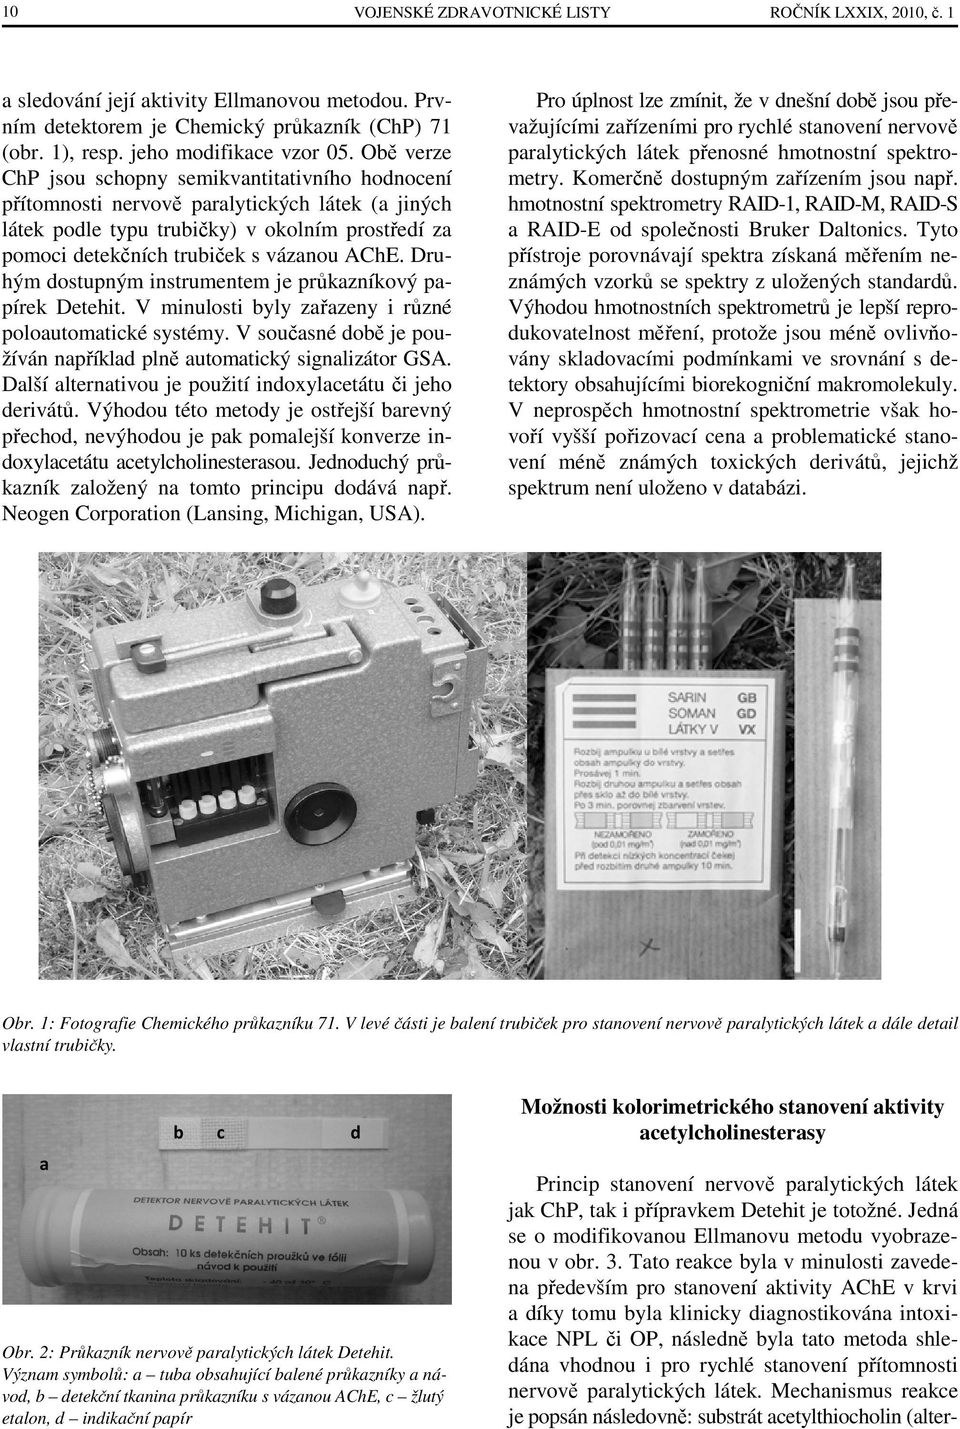 Druhým dostupným instrumentem je průkazníkový papírek Detehit. V minulosti byly zařazeny i různé poloautomatické systémy. V současné době je používán například plně automatický signalizátor GSA.